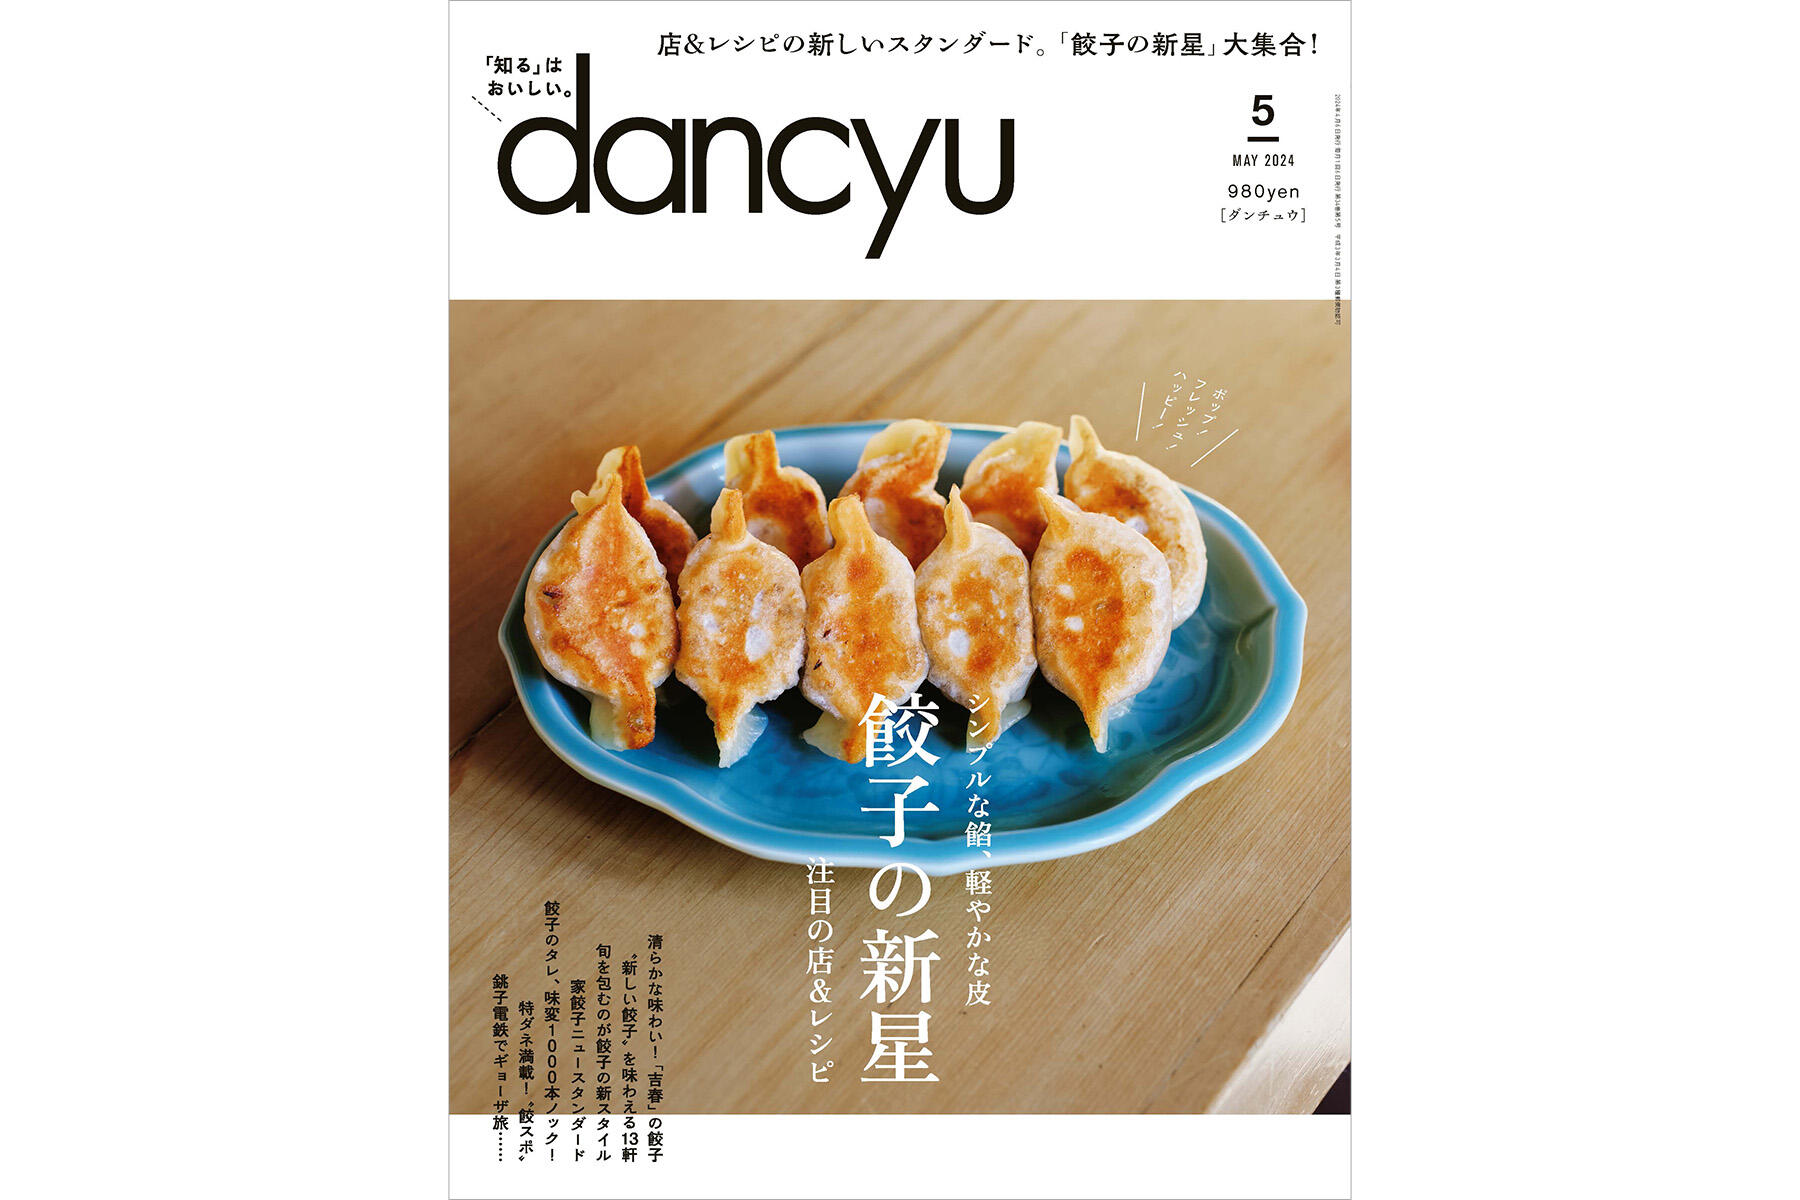 （古本）dancyu 1991年5月号 餃子の傑作 ダンチュウ シミあり プレジデント社 Z03805 19910501発行